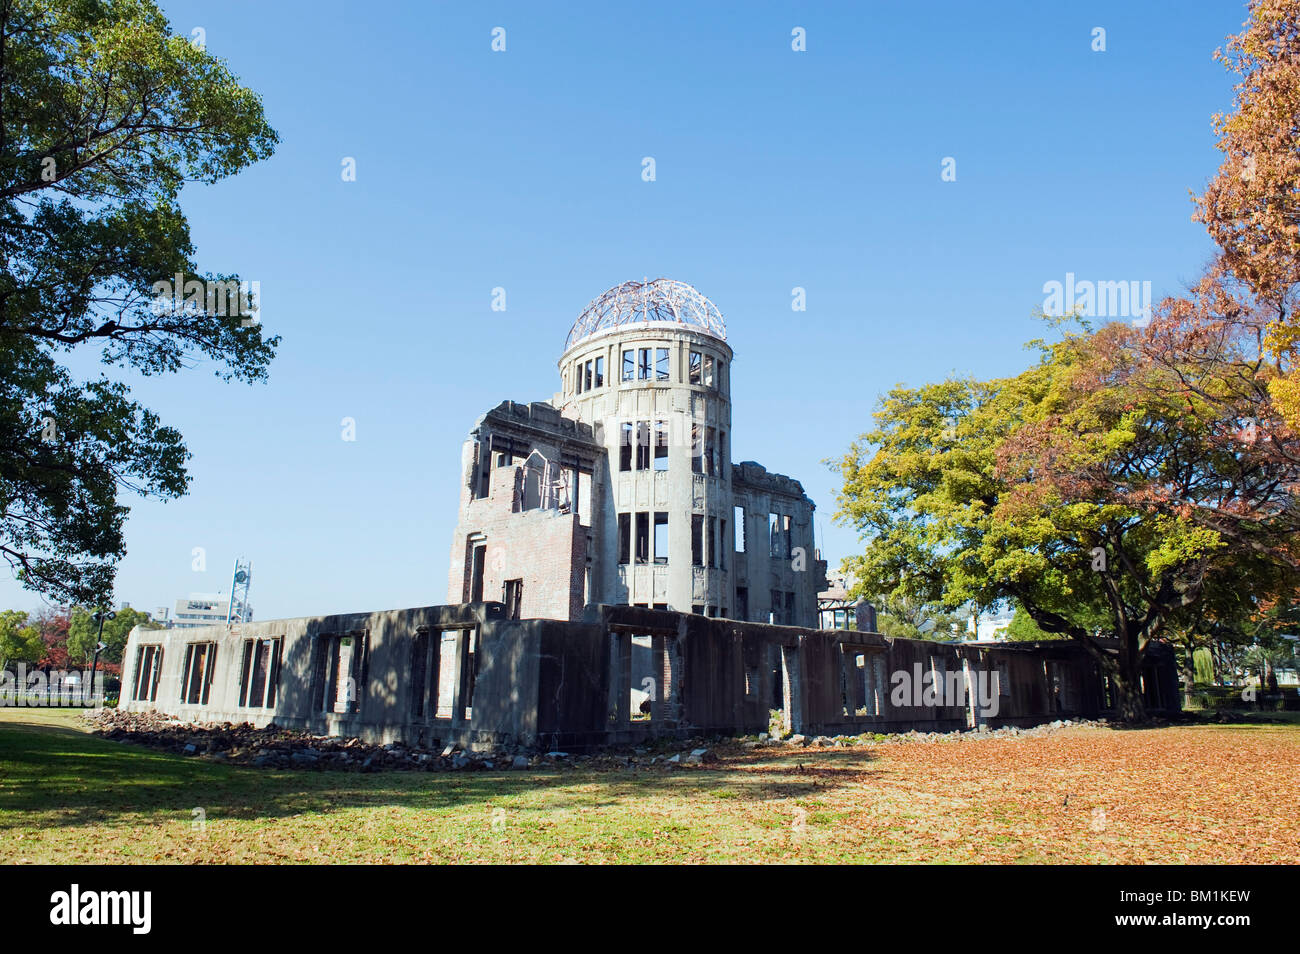 Dôme de la bombe atomique, Hiroshima, UNESCO World Heritage Site, préfecture de Hiroshima, Japon, Asie Banque D'Images